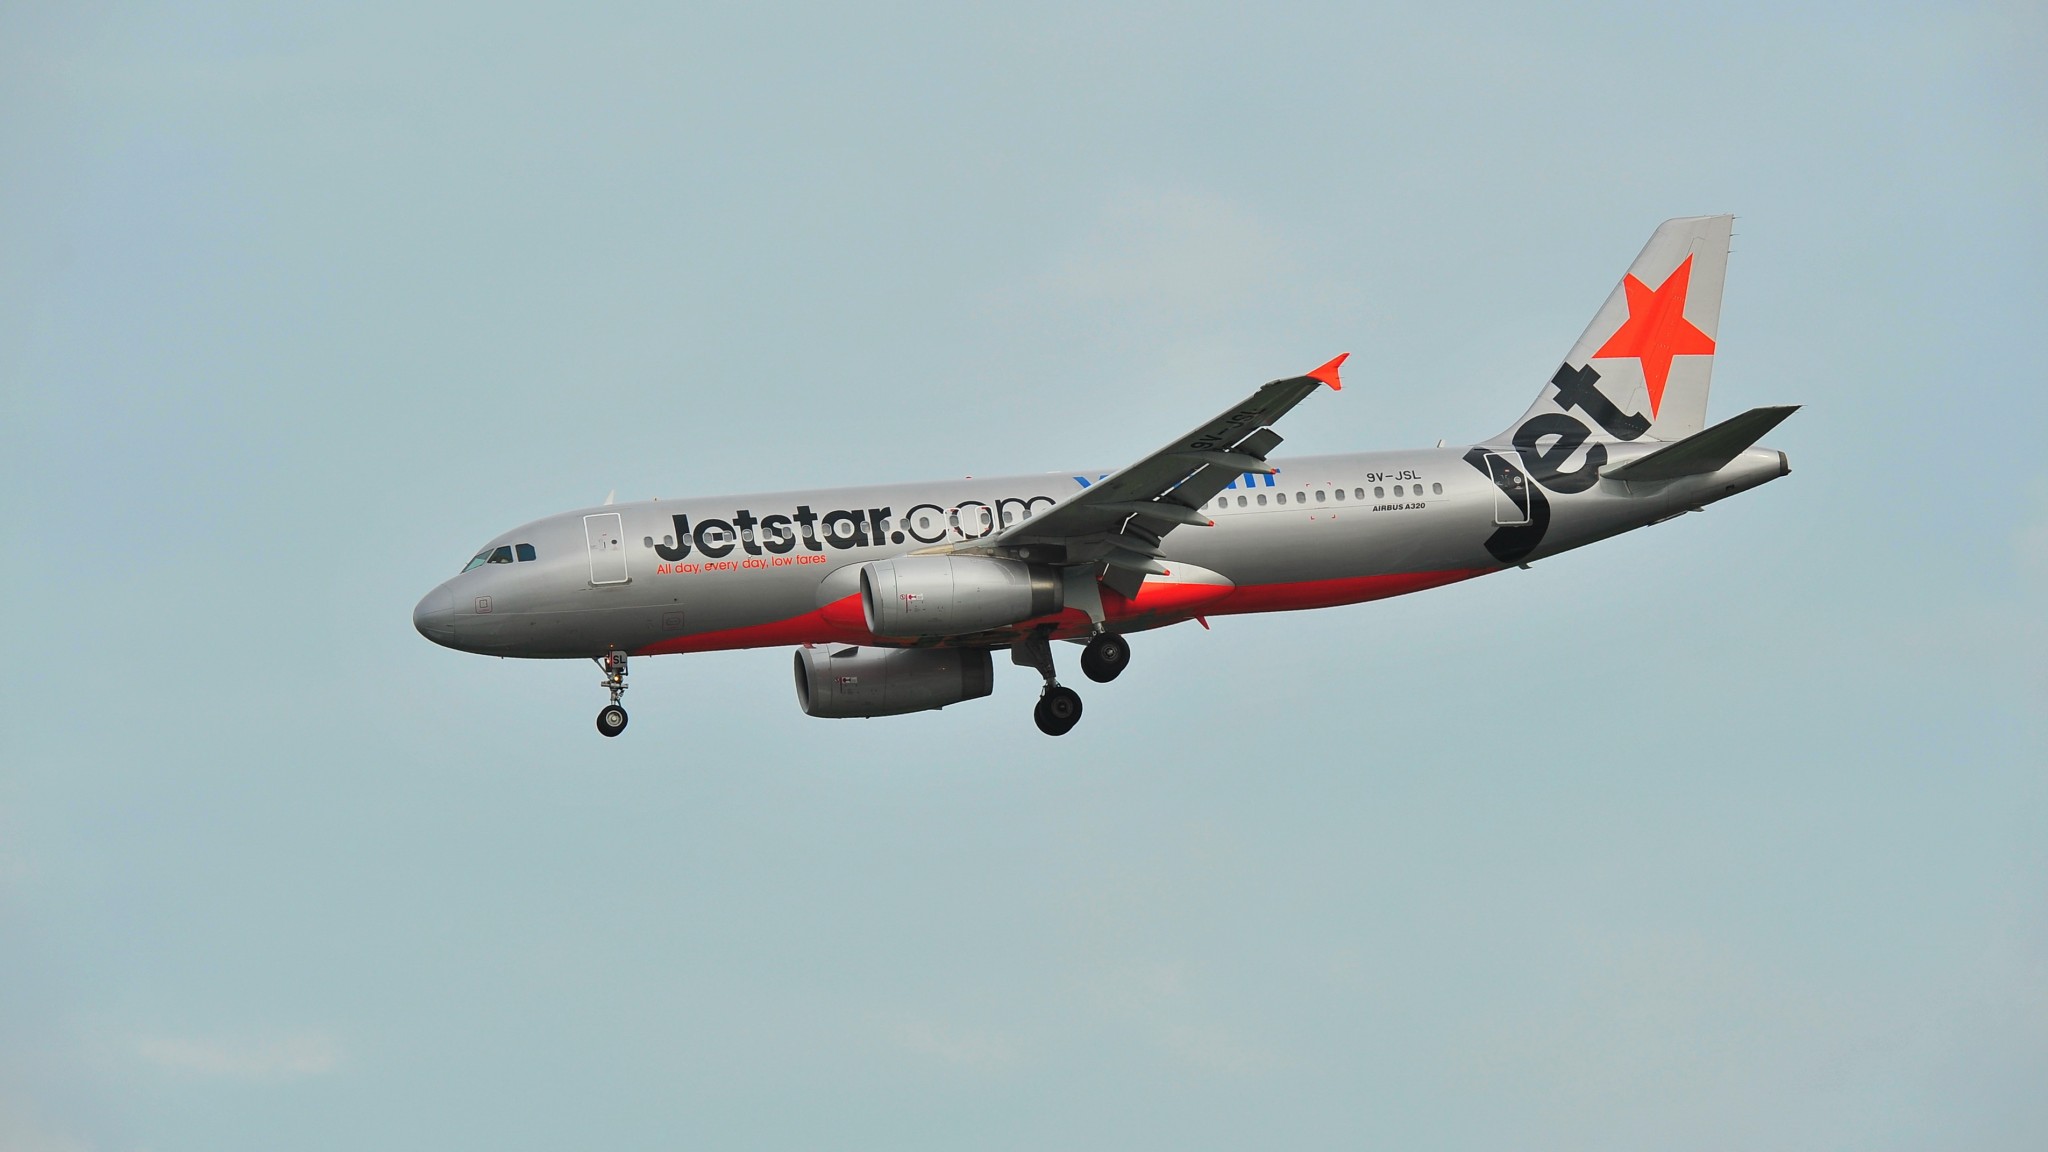 Jetstar announces Brisbane-Auckland direct route